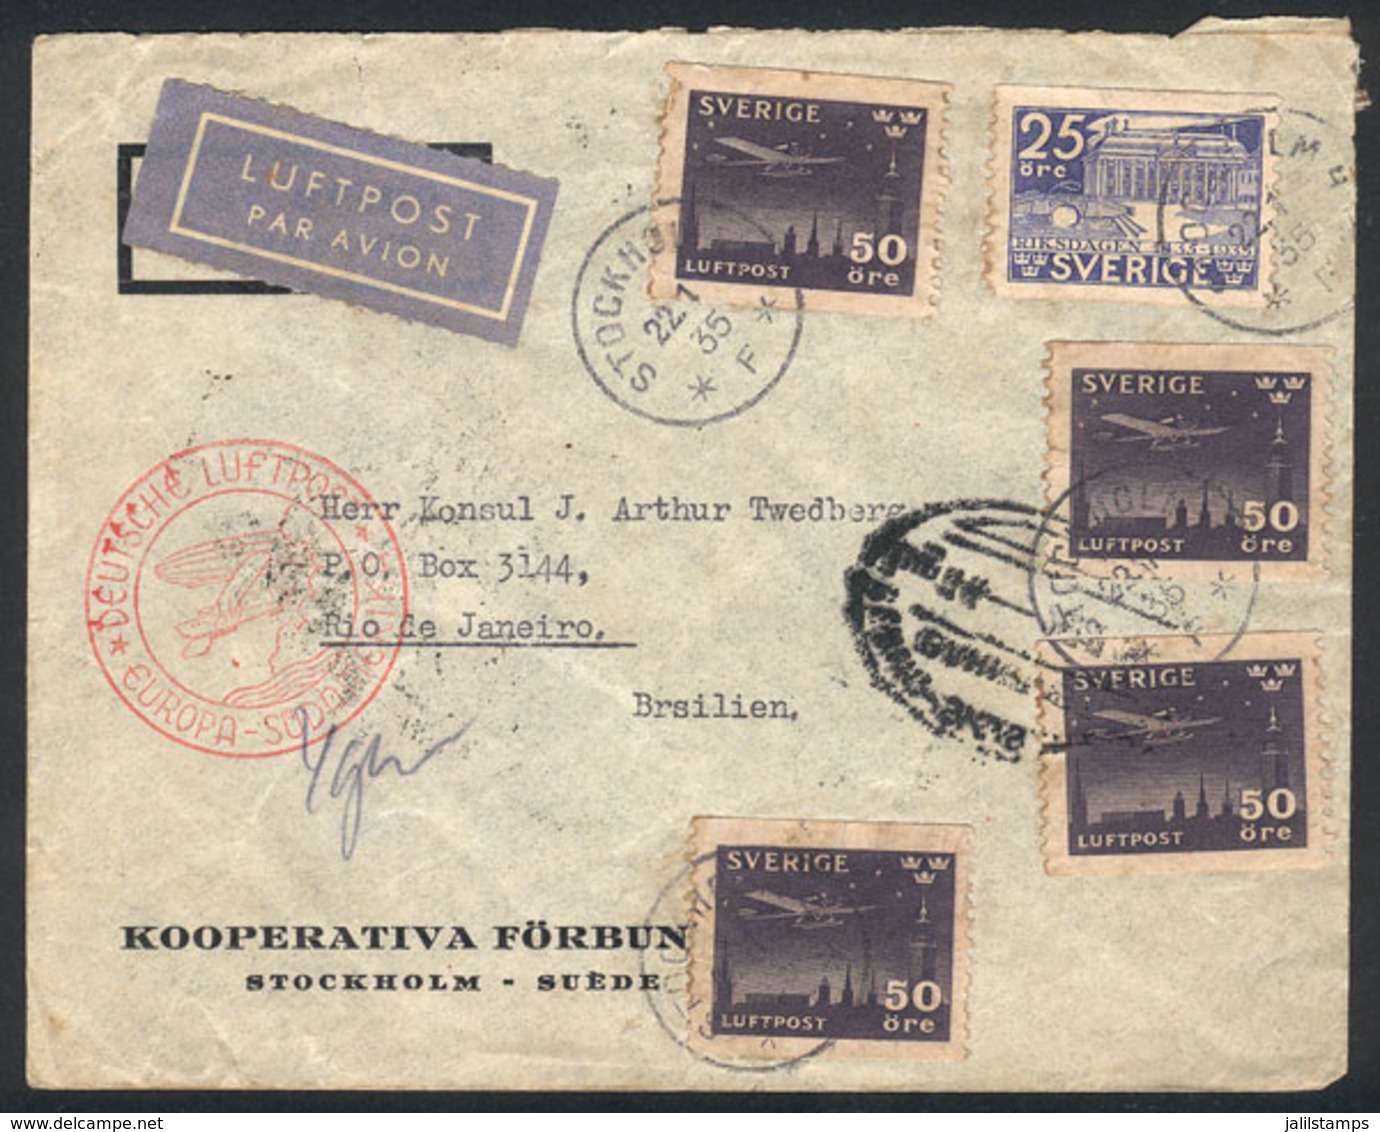 SWEDEN: 22/JA/1935 Stockholm - Rio De Janeiro: Airmail Cover Sent Via Germany (DLH), Very Attractive! - Briefe U. Dokumente